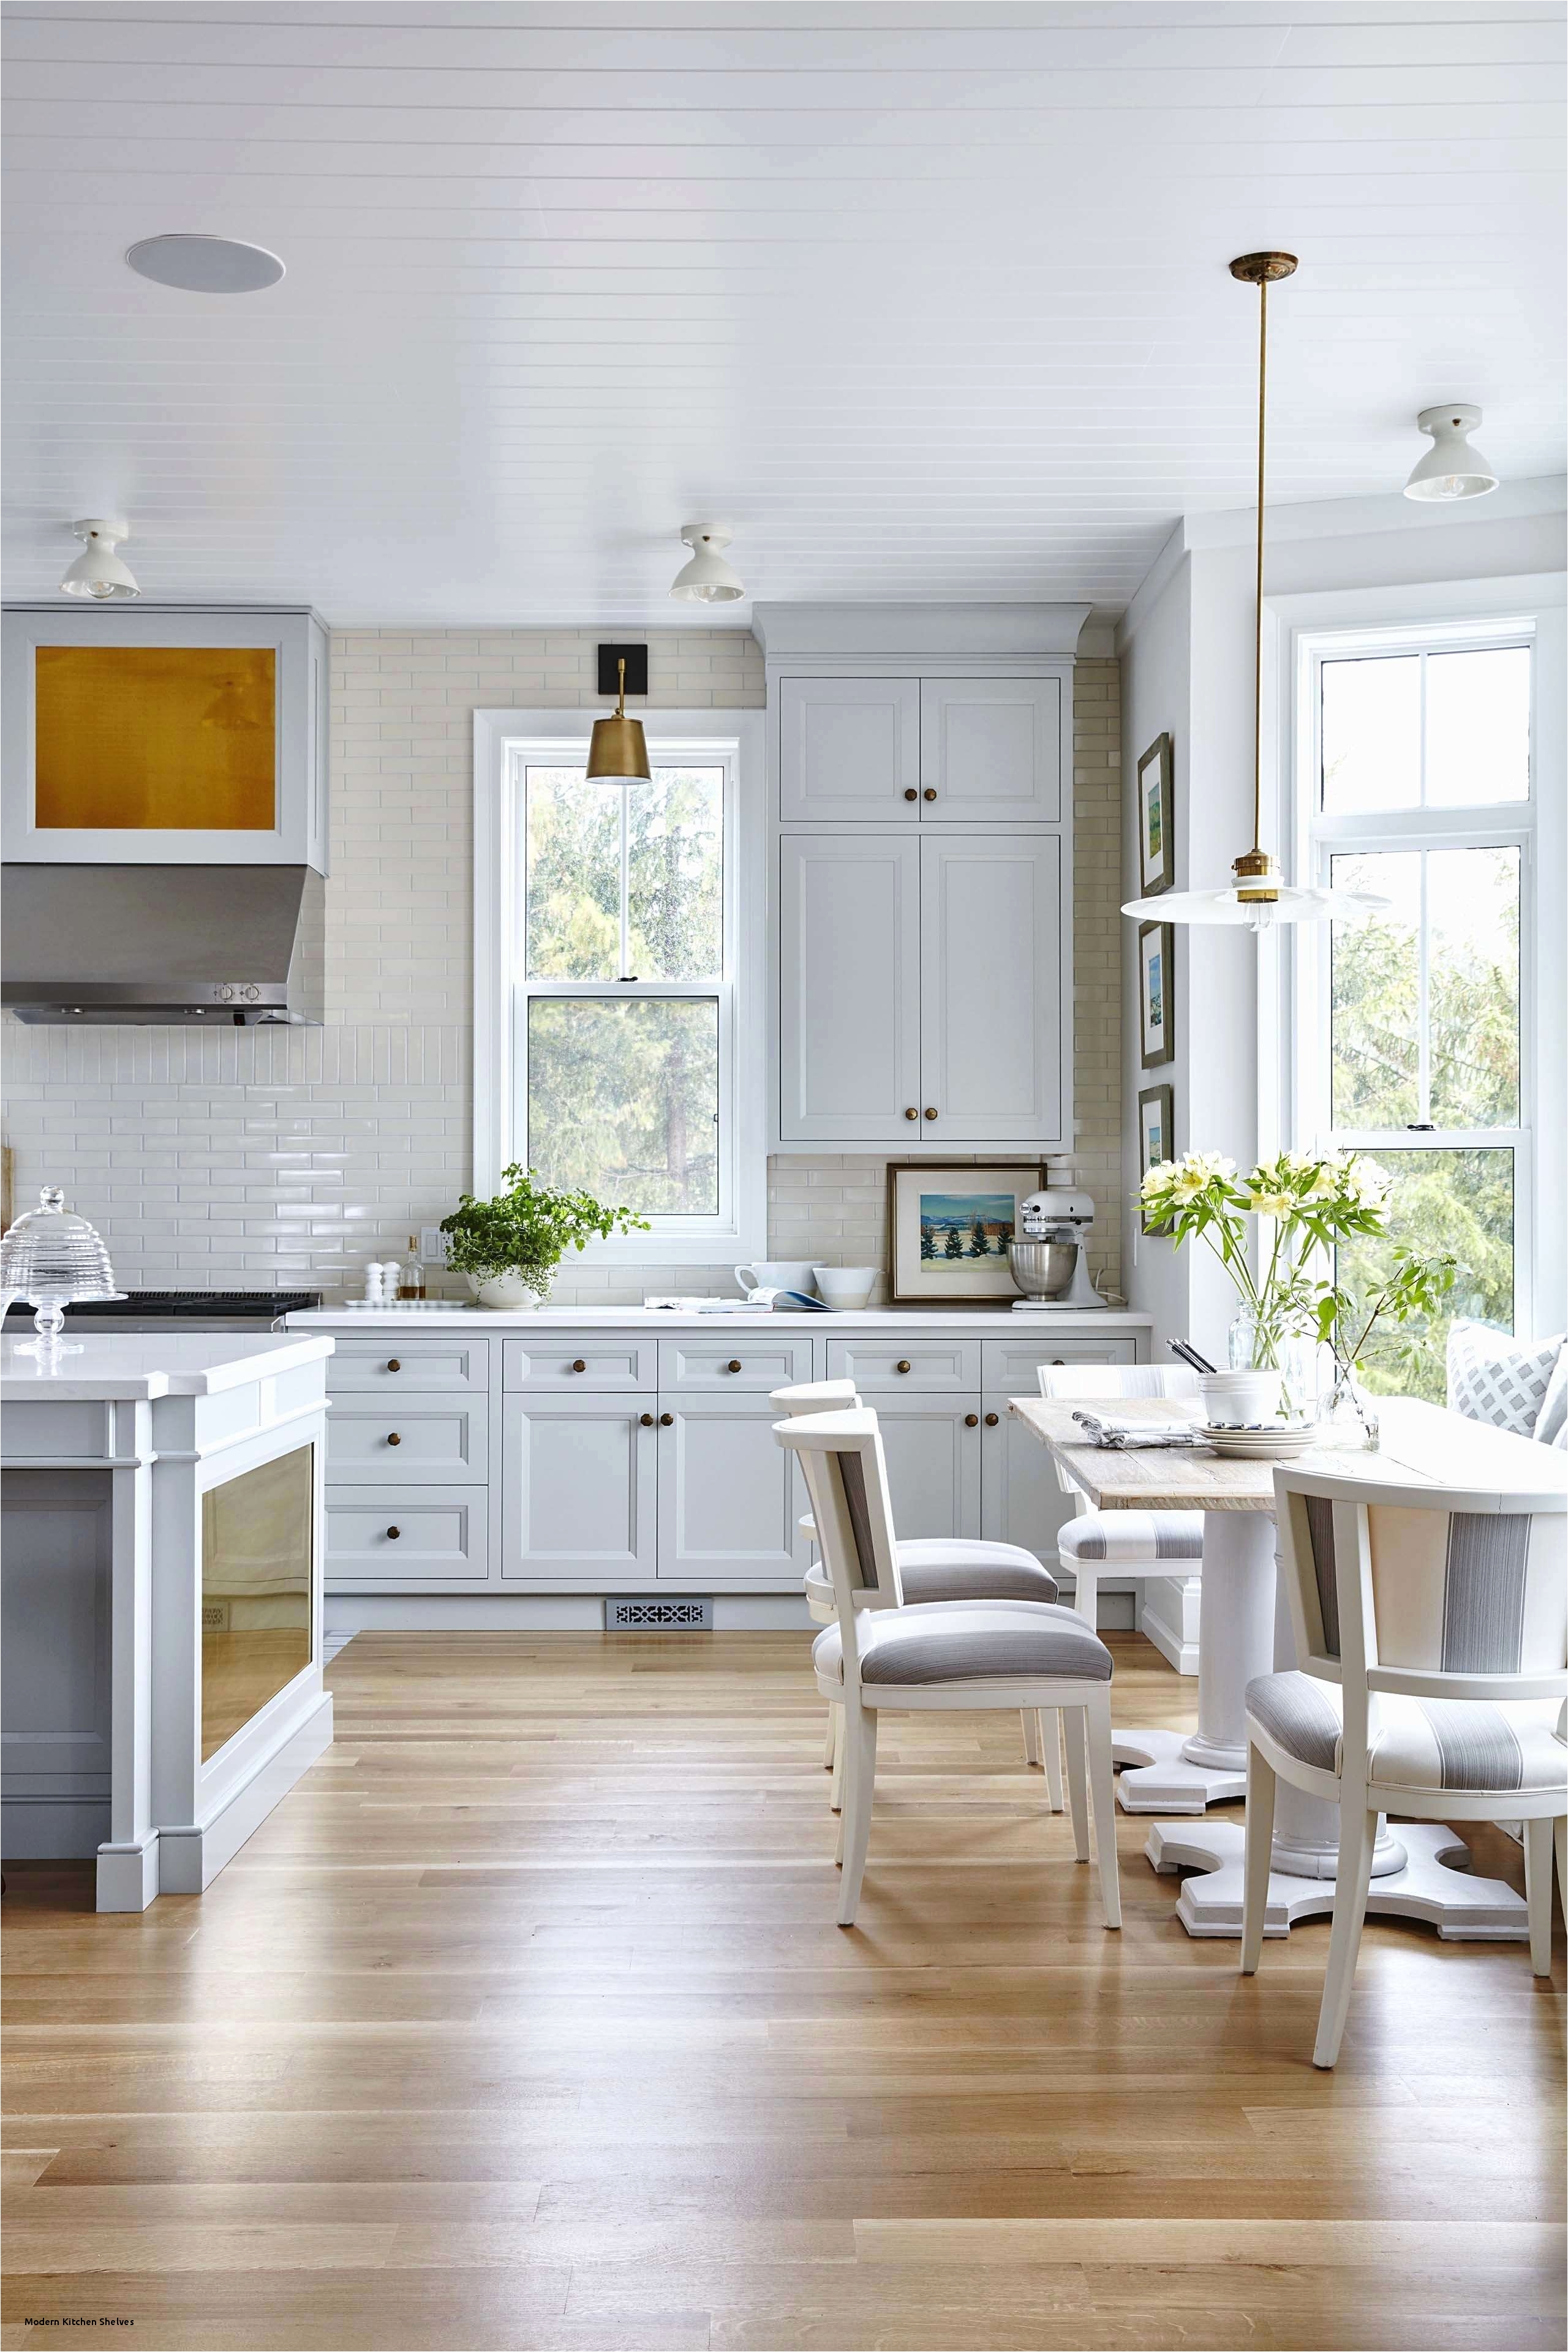 0d‚ Kitchens Design Ideas Design 12 Luxury Modern Shelf Decor